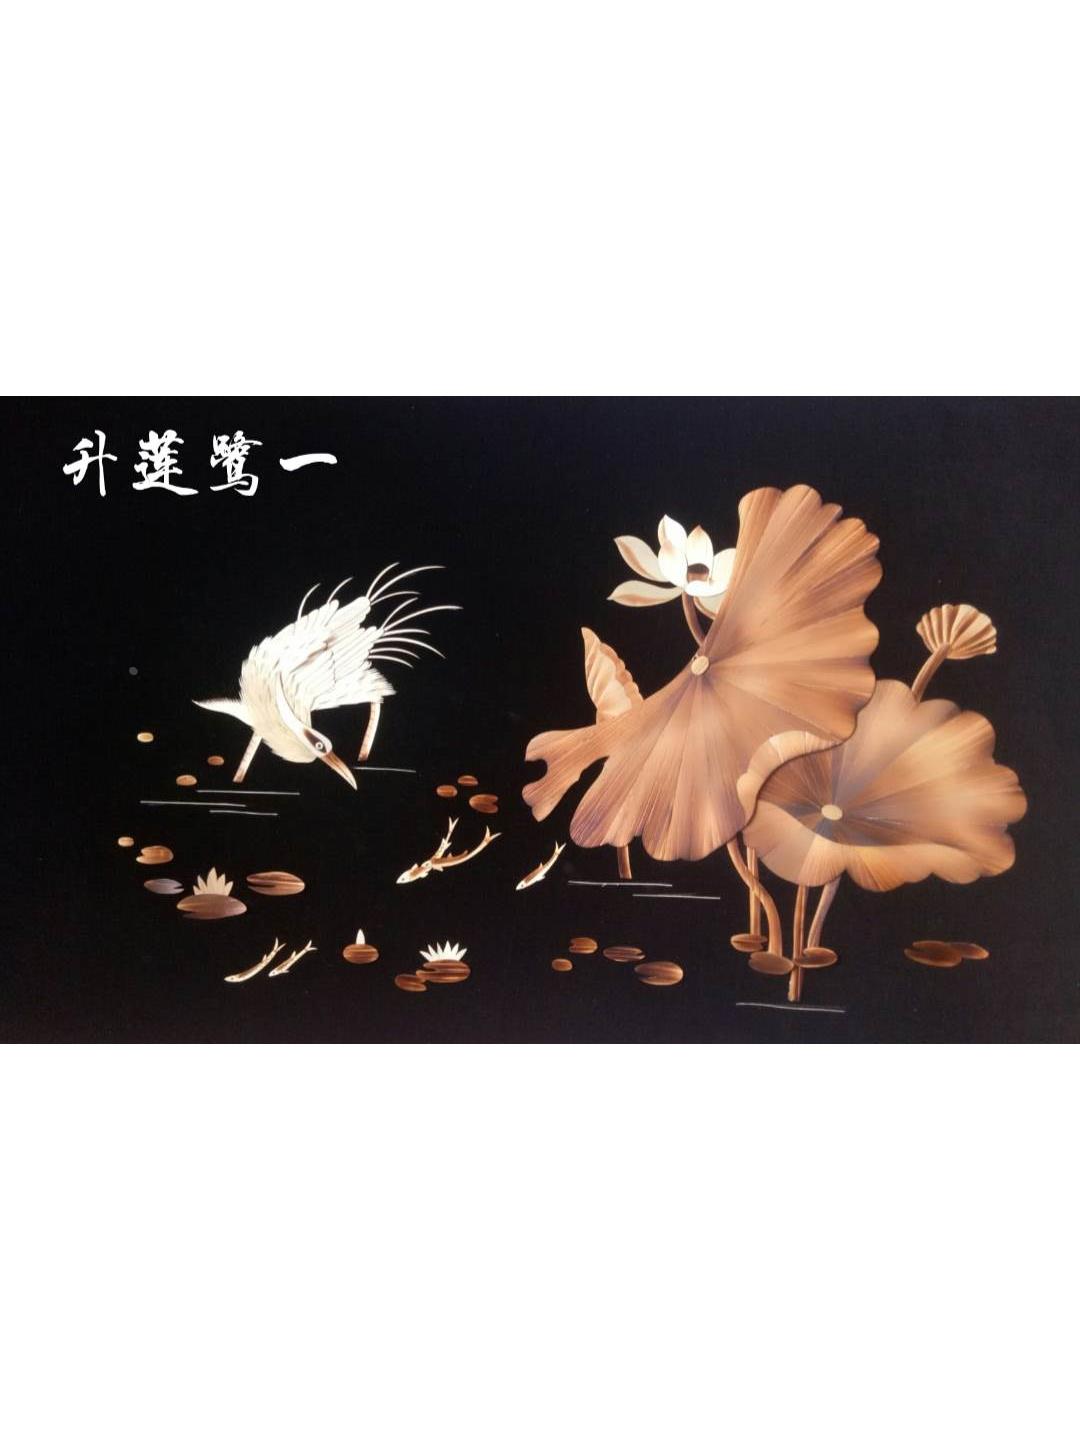 白洋淀雄安新区非物质文化遗产芦苇画带框成品尺寸56*83